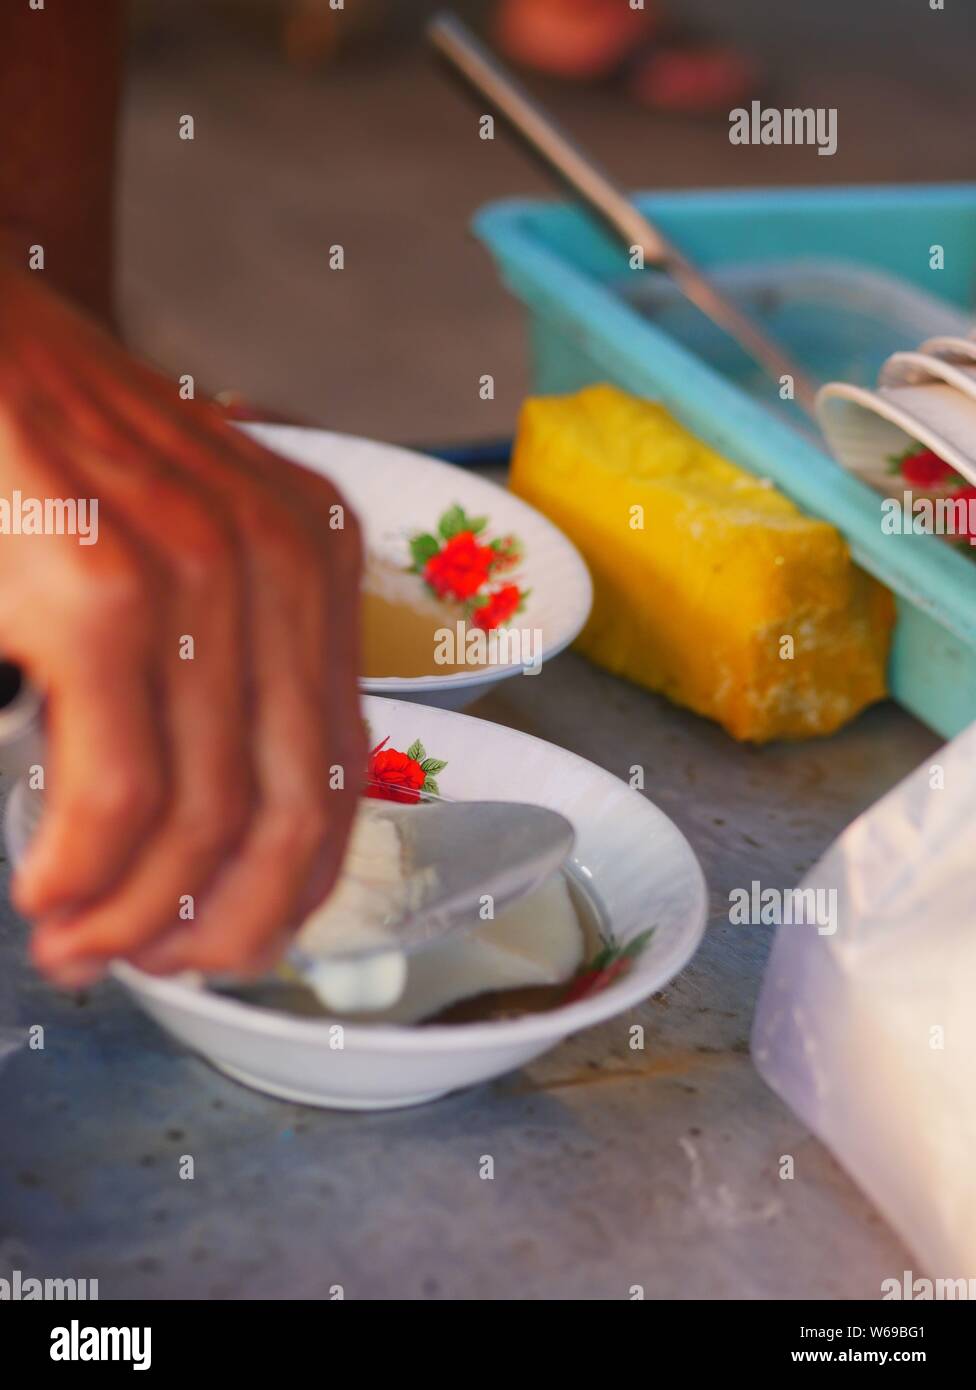 Verkäufer bereit tahok für Kunden. Tahok ist ein Pudding - wie Teller mit einem unverwechselbaren süßen Geschmack der javanischen Zucker. Stockfoto